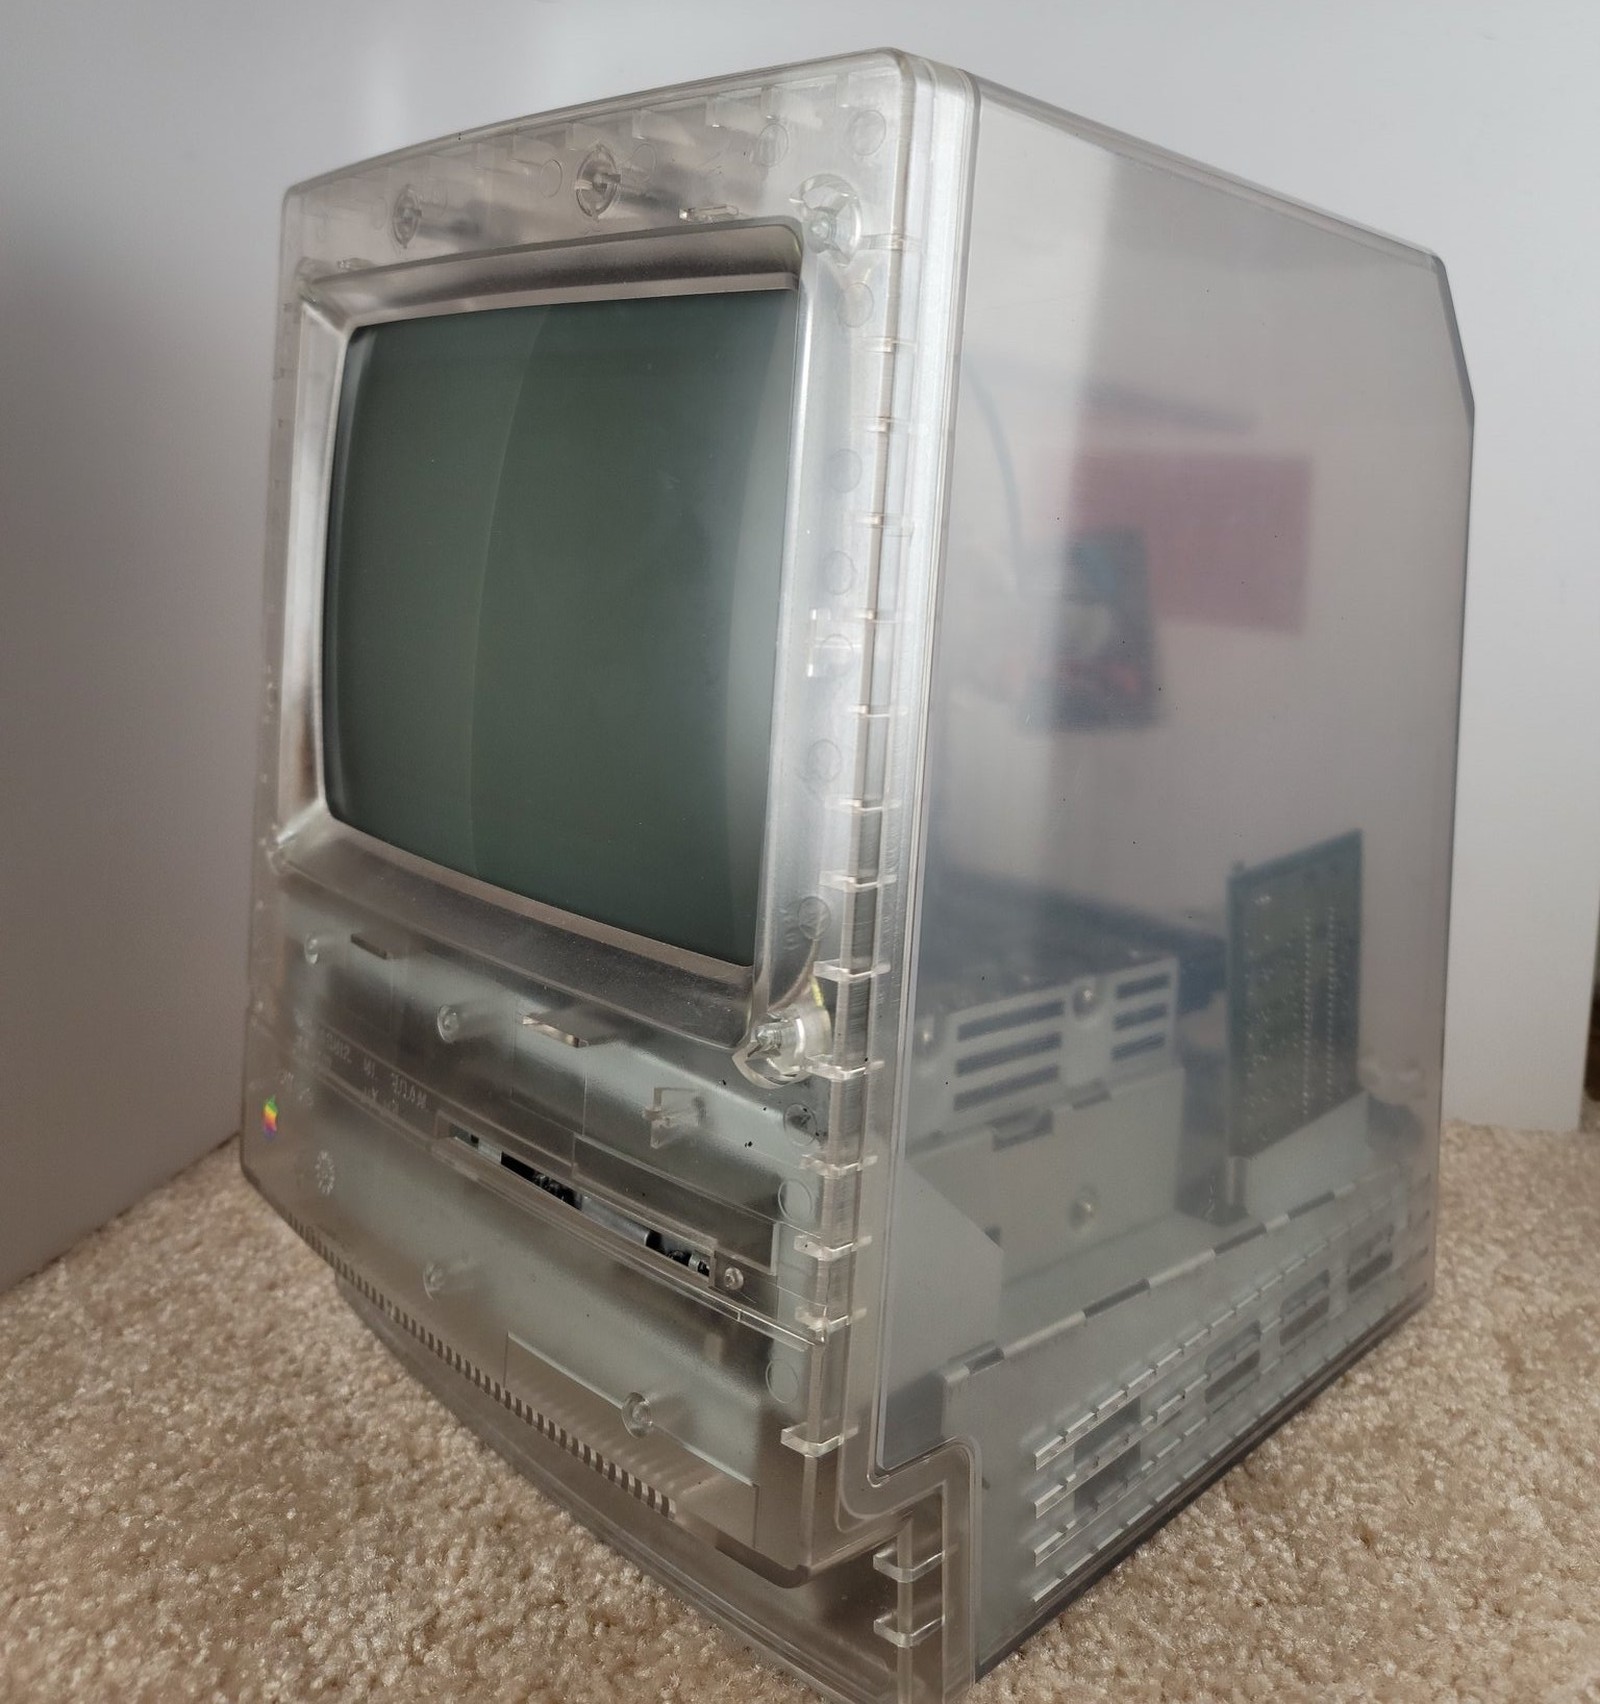 В сети появились фото прототипа компьютера Macintosh Classic в прозрачном корпусе